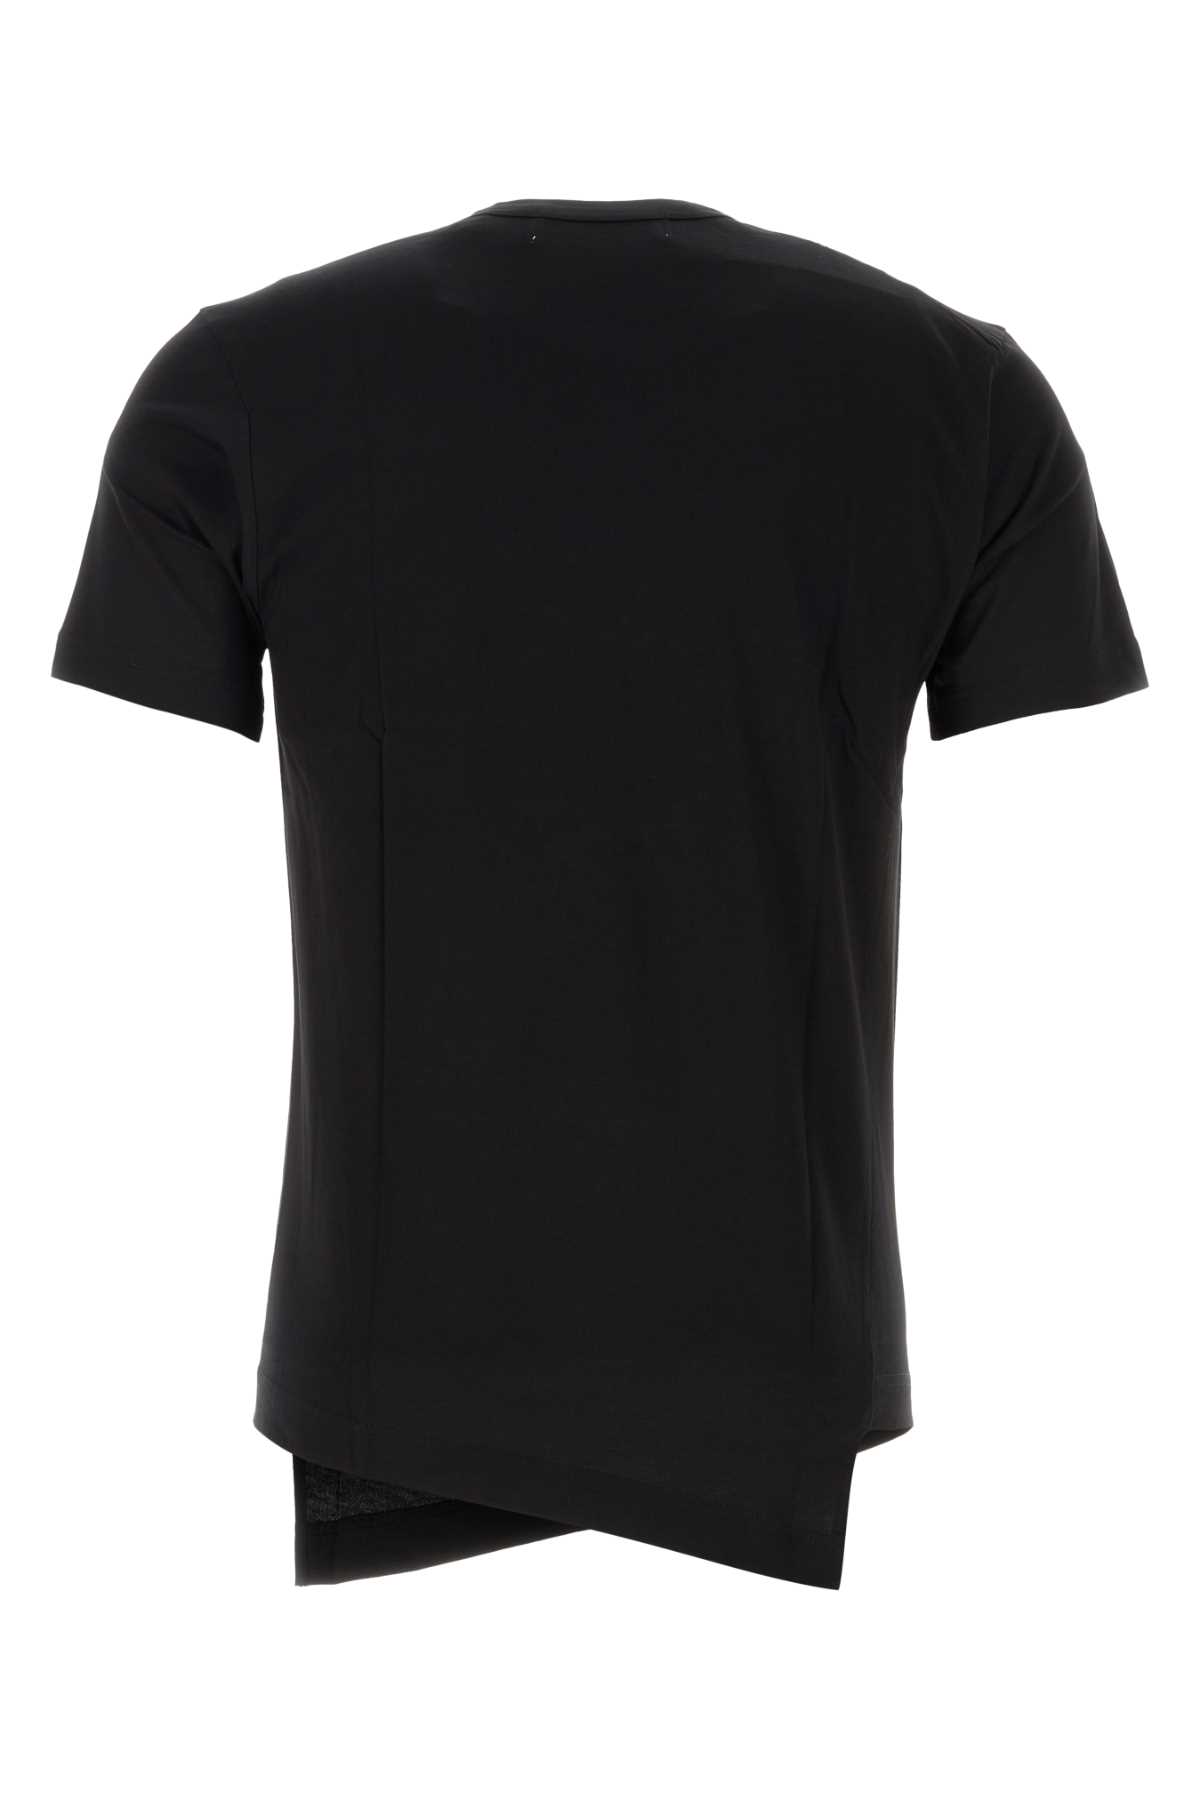 Comme Des Garçons Shirt Black Cotton Comme Des Garã§ons Shirt X Lacoste T-shirt